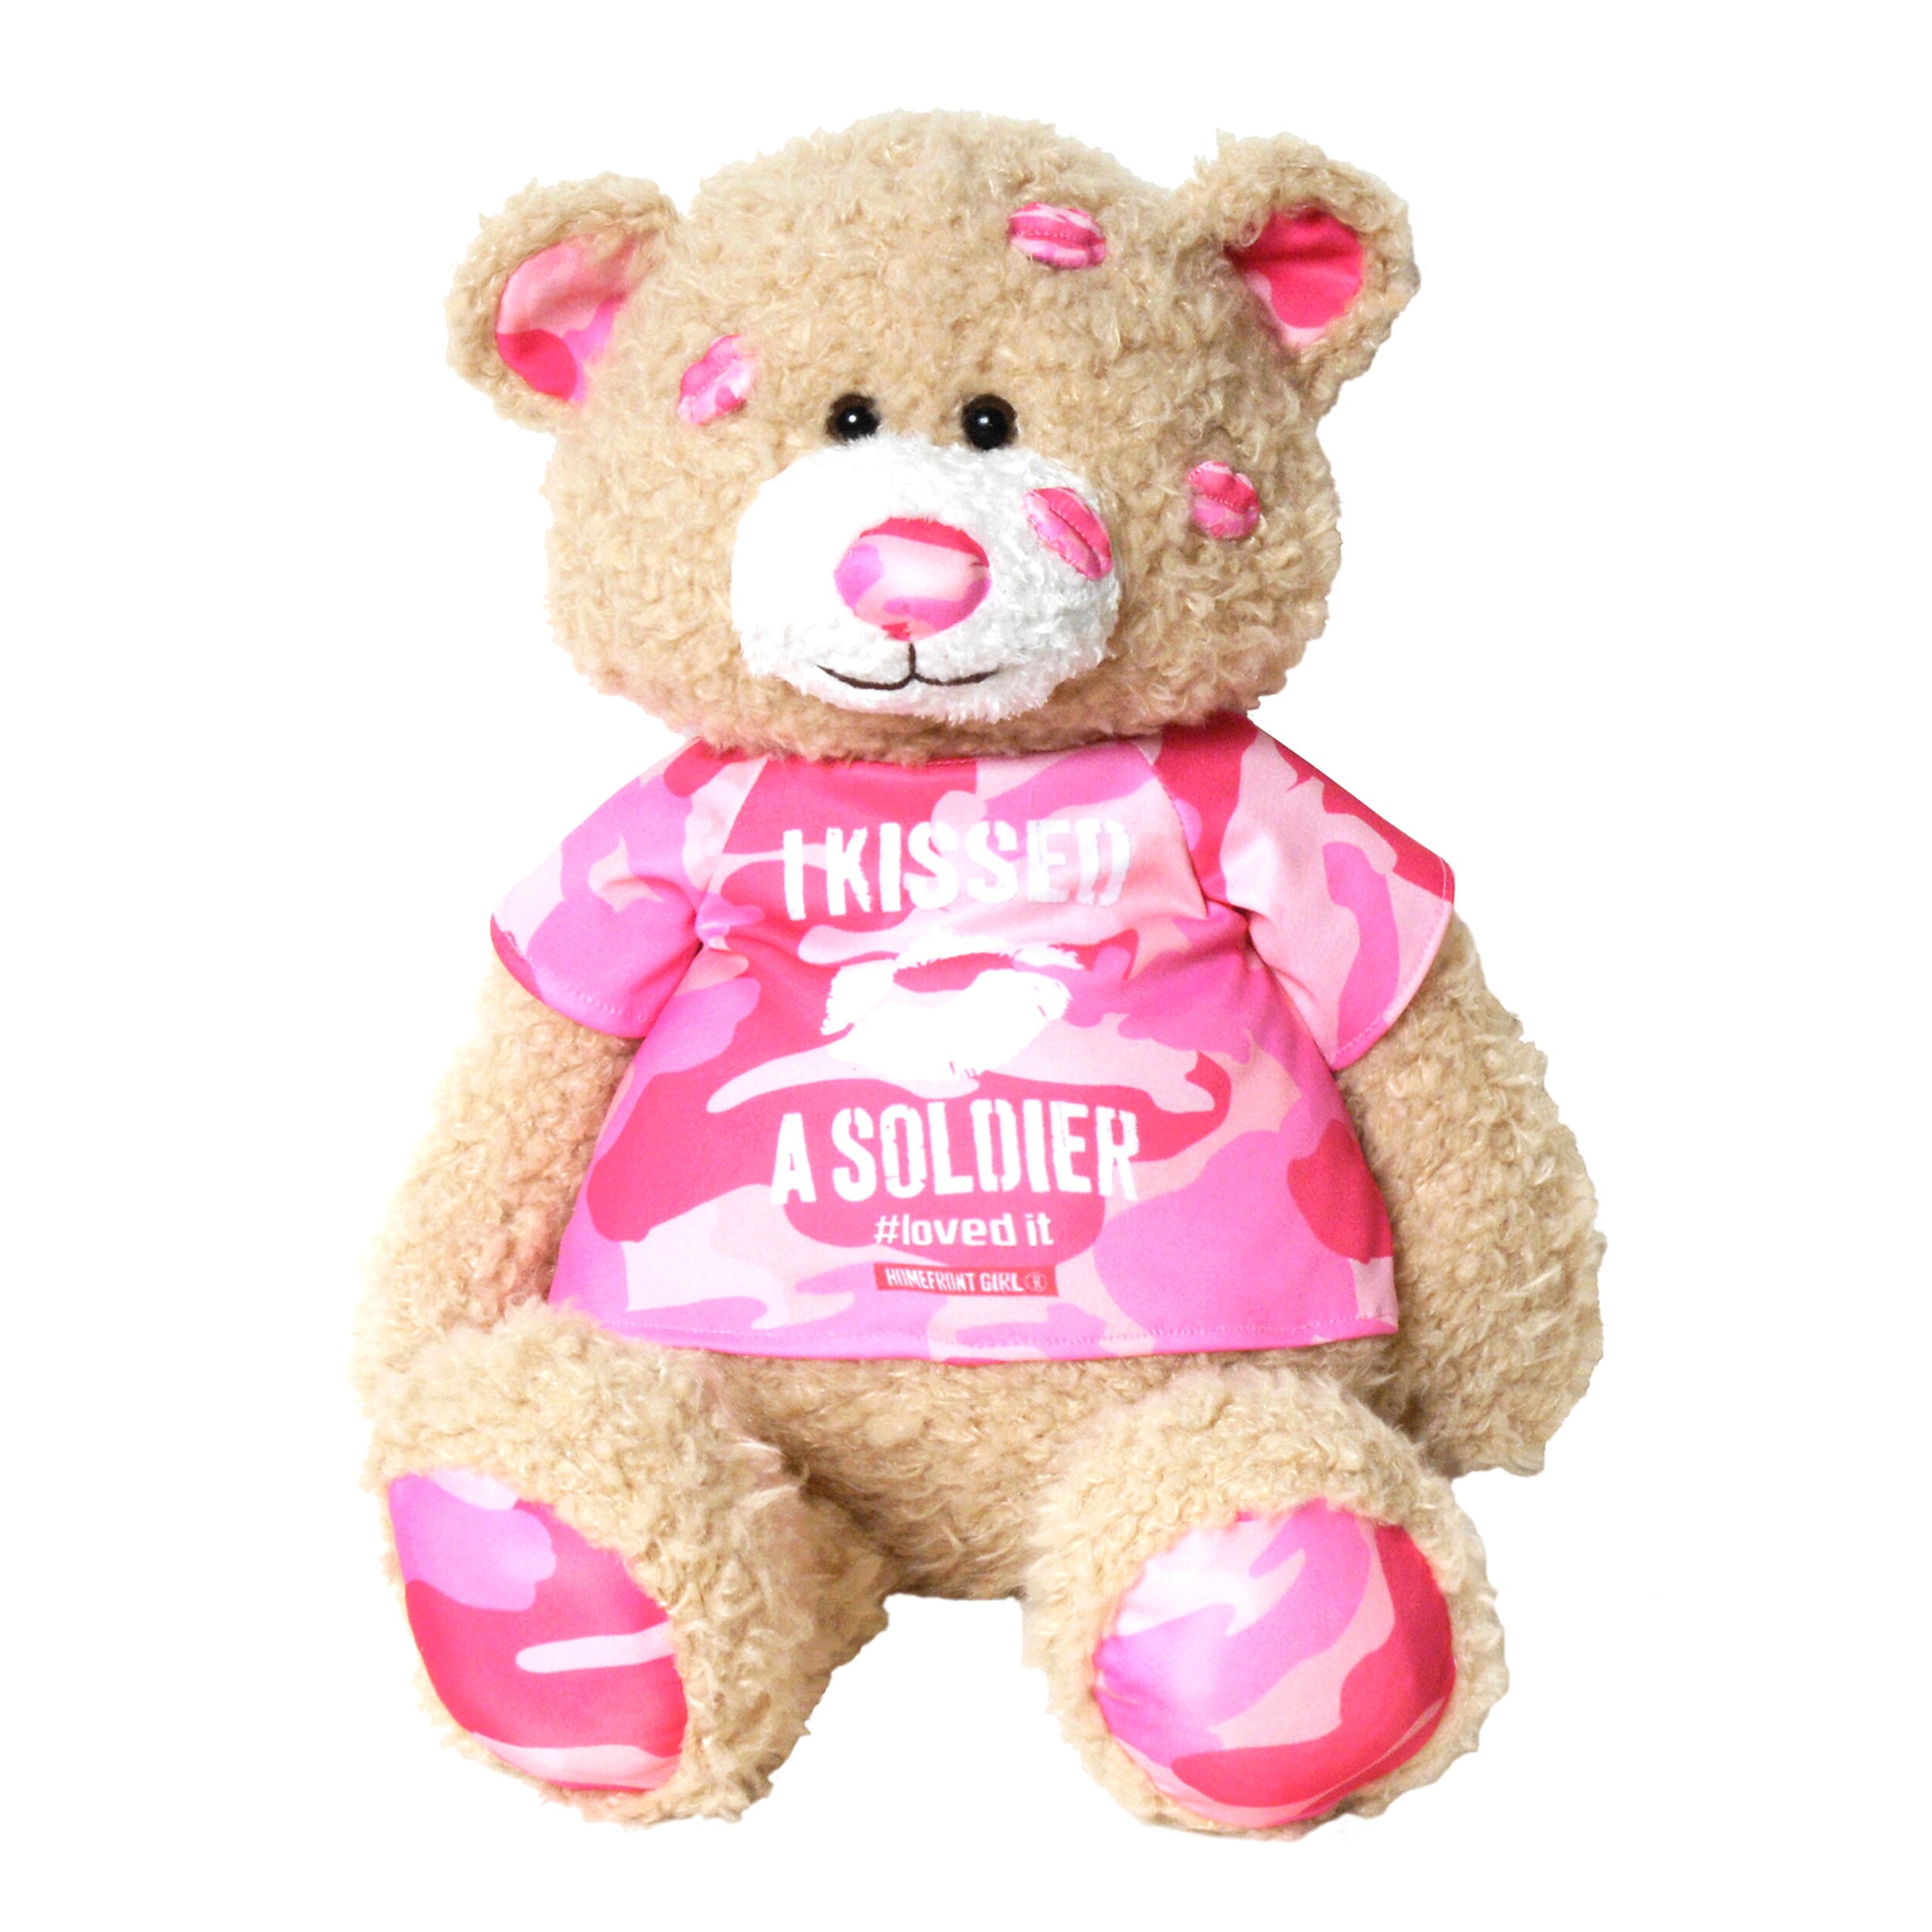 girly teddy bear